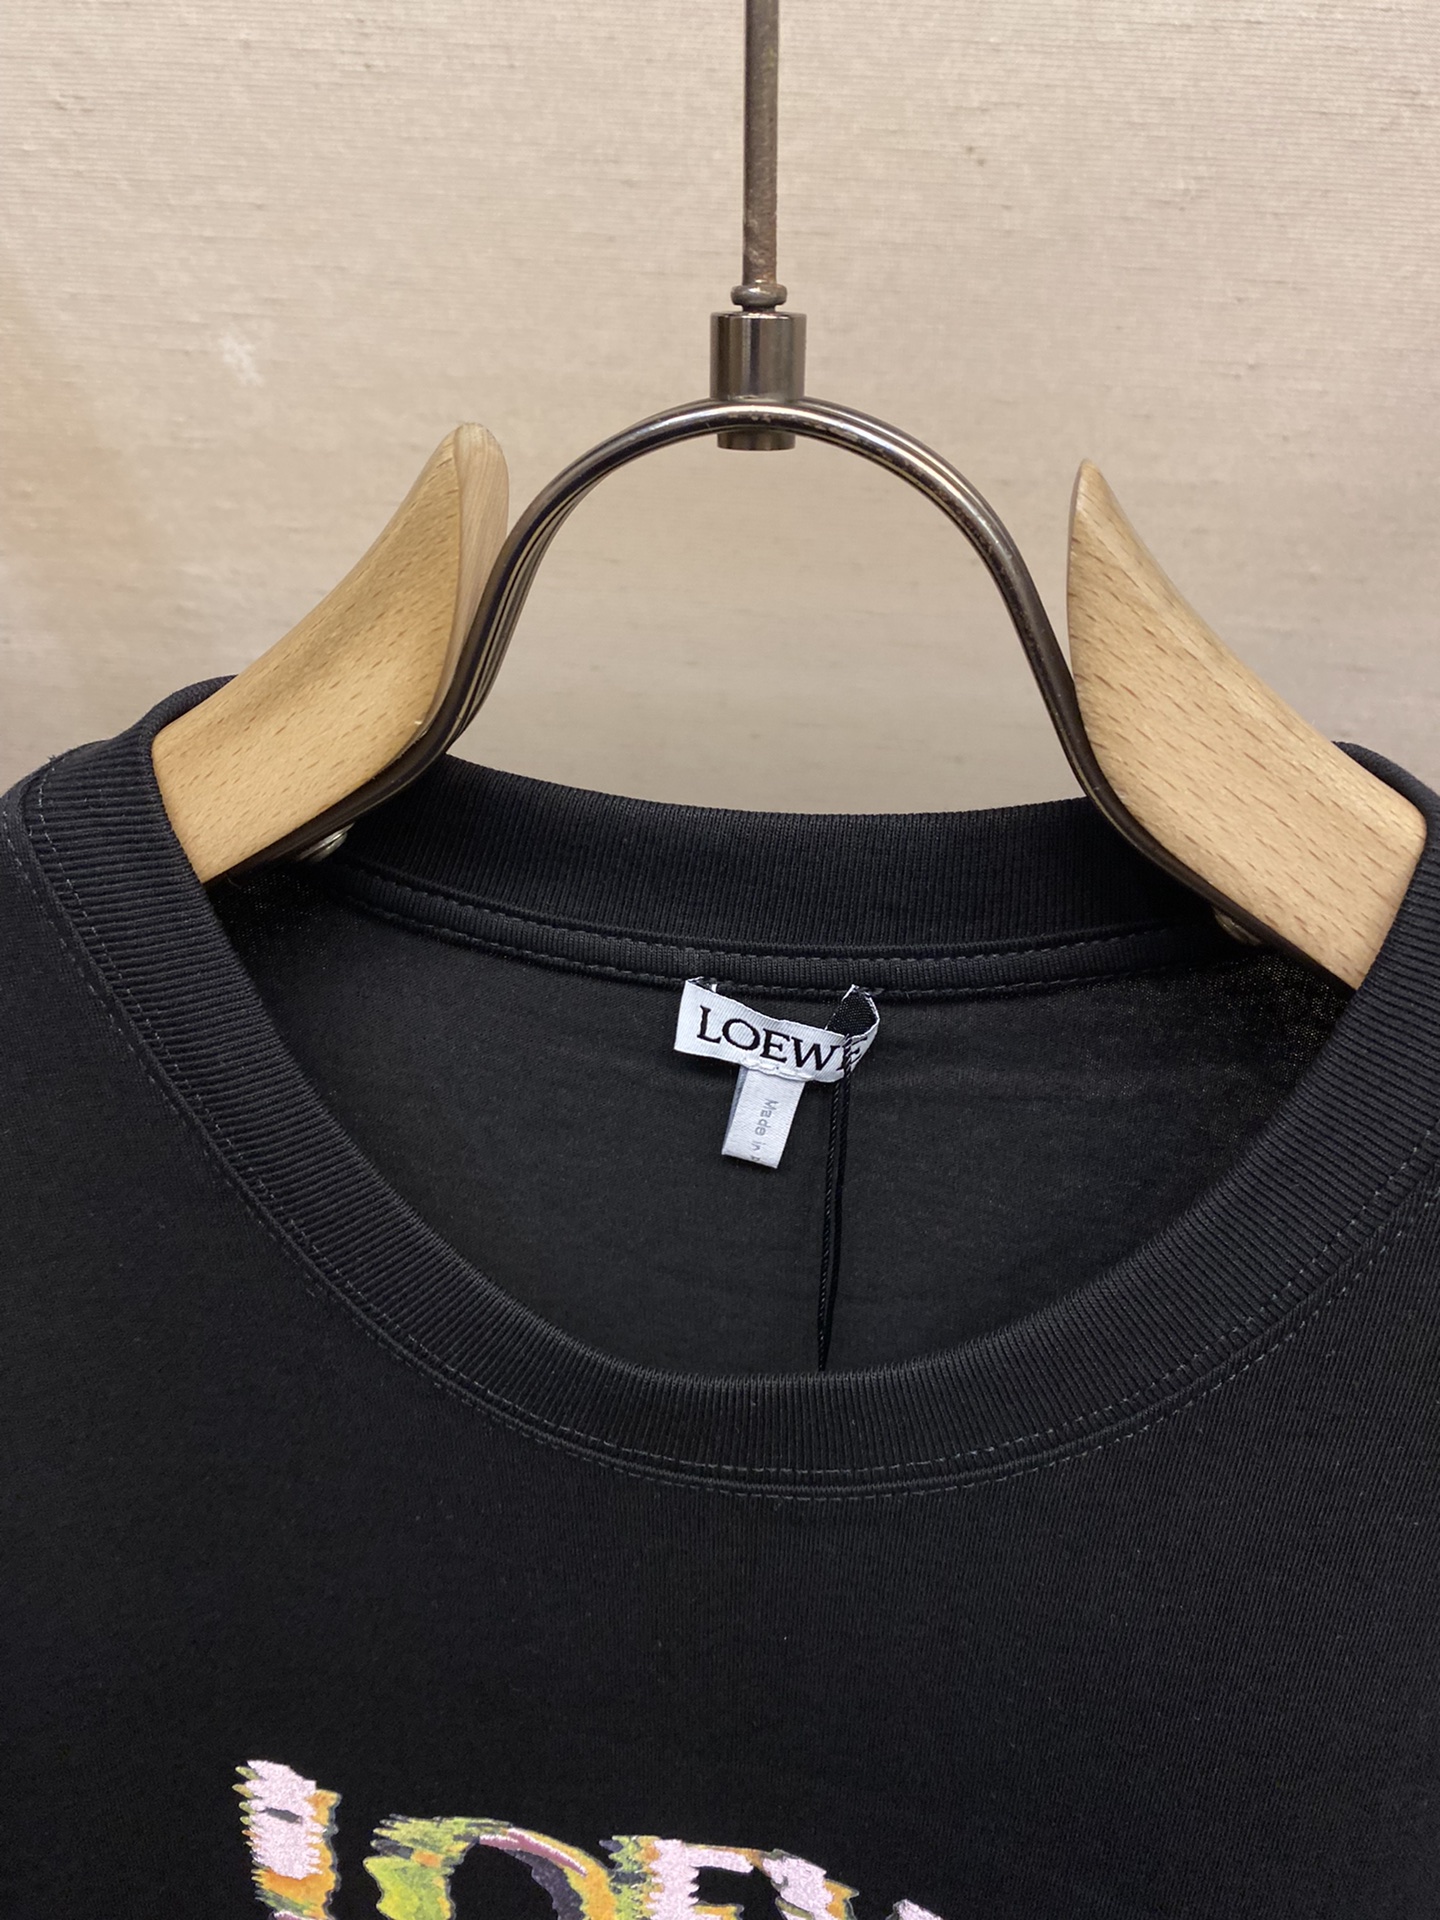 Loewe24SS重影刺绣春夏新款时尚休闲棉质圆领男女织带胸前高端字母图案短袖T恤衫非常适合日常穿着的百